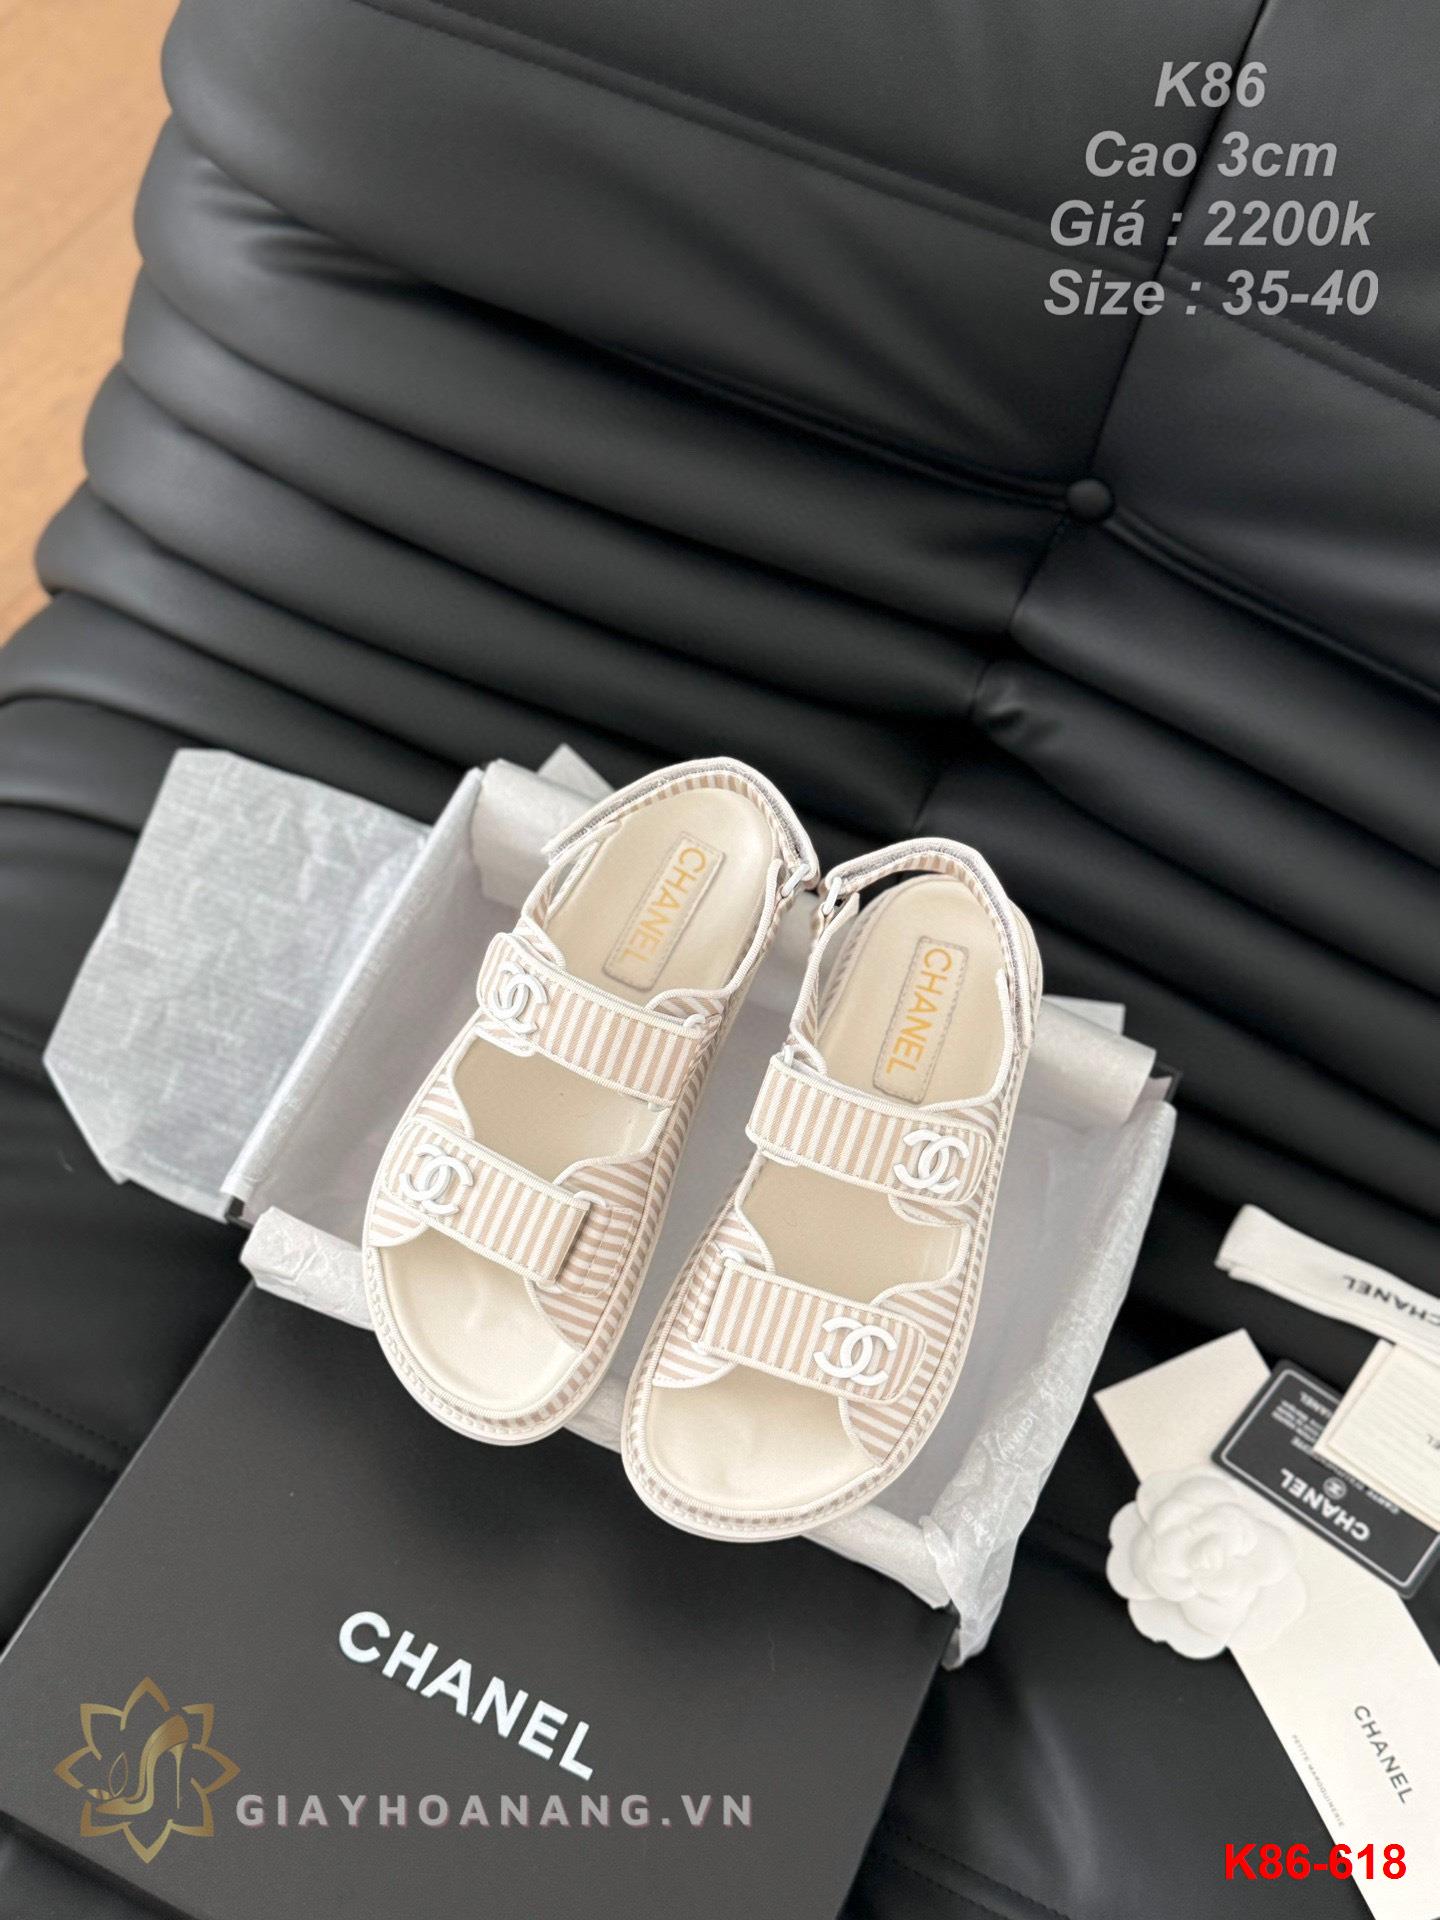 K86-618 Chanel sandal cao gót 3cm siêu cấp